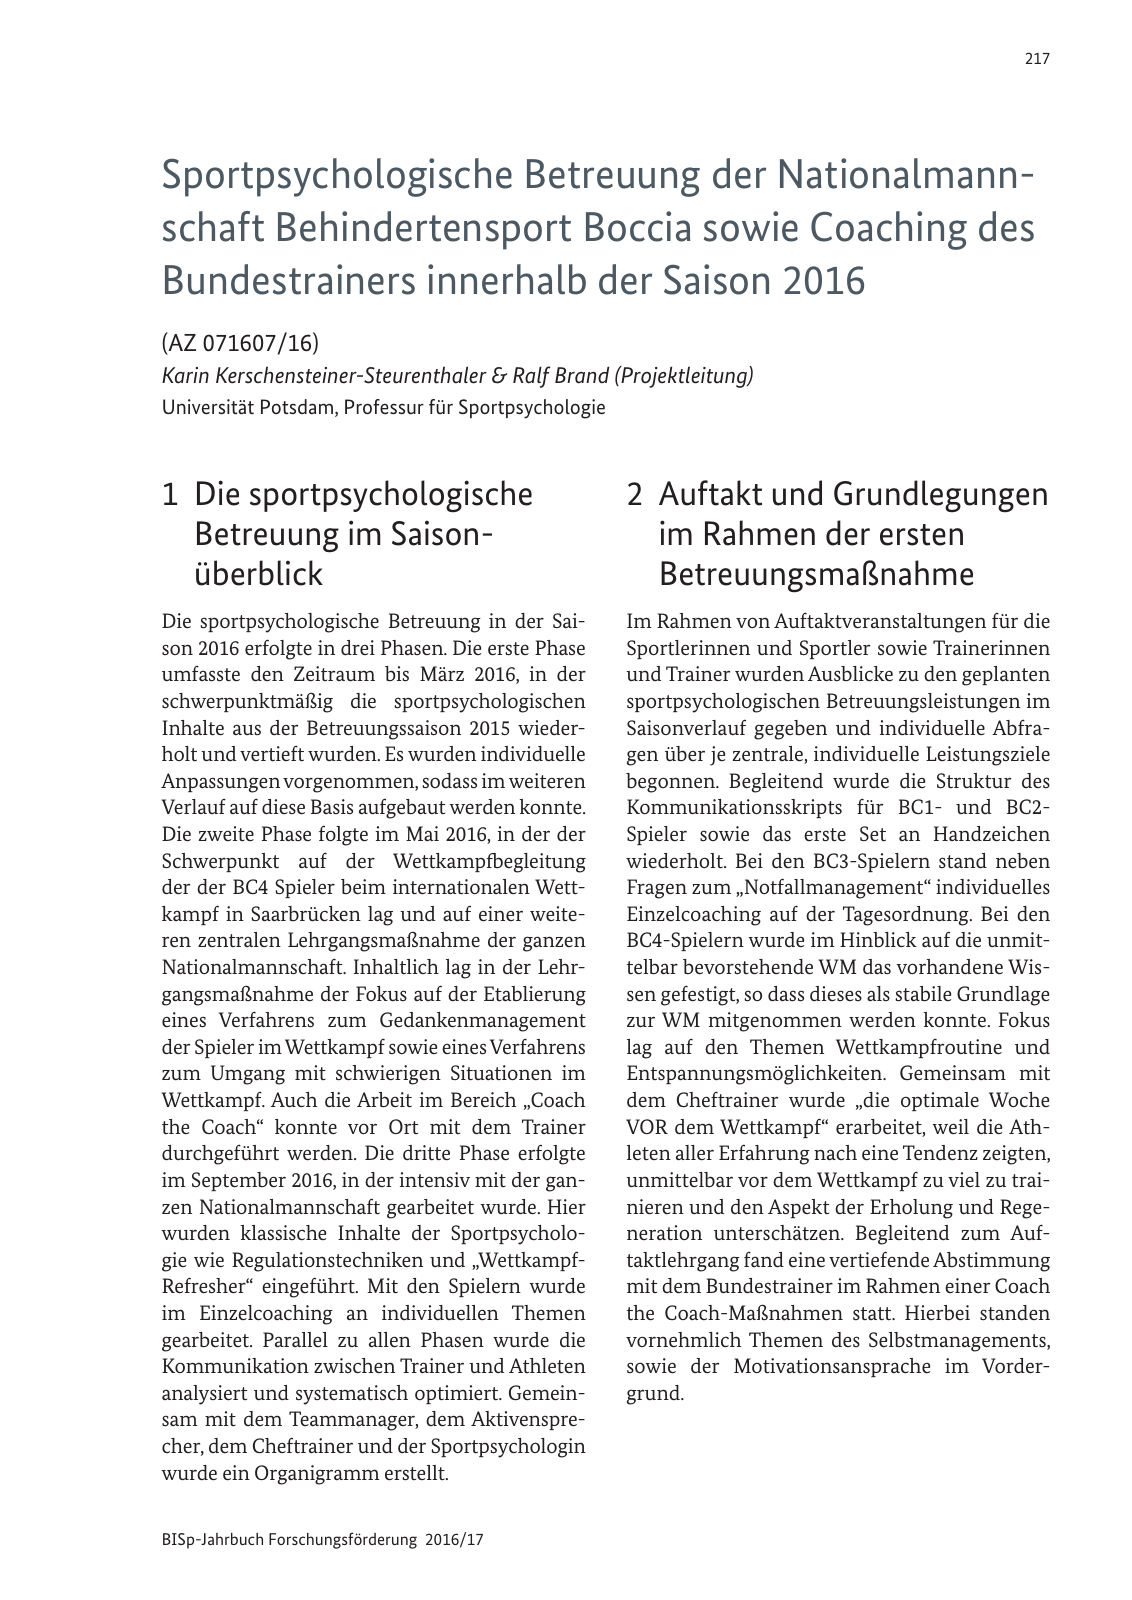 Vorschau BISp-Jahrbuch 2016/2017 Seite 219